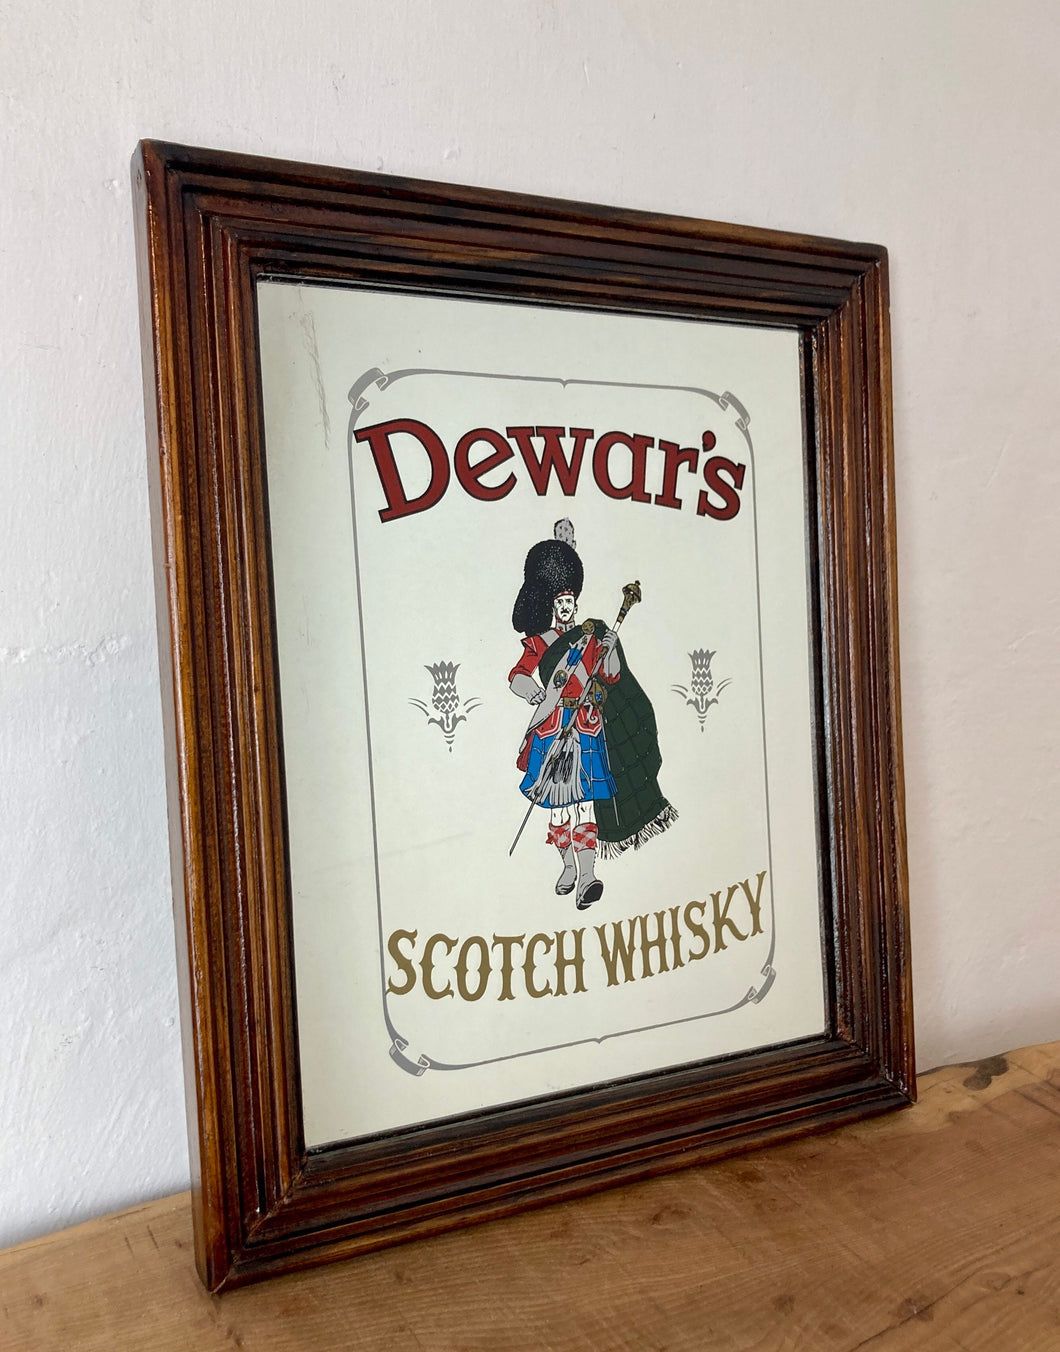 Dewars vintage Scotch whisky mirror advertising wine spirits bar pub collectibles piece